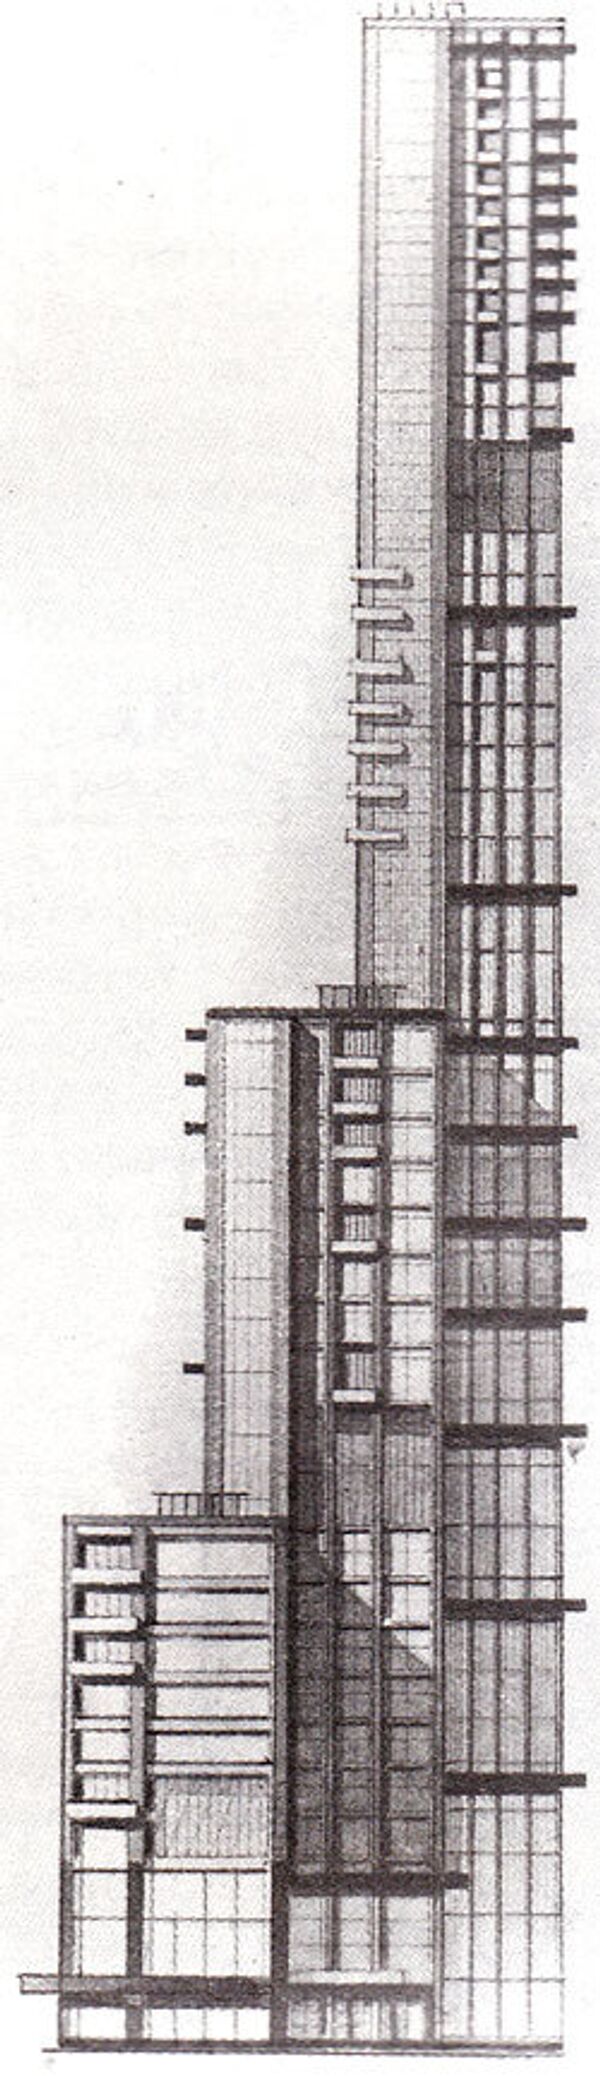 Проект небоскреба ВСНХ в Москве, созданный мастерской Николая Ладовского